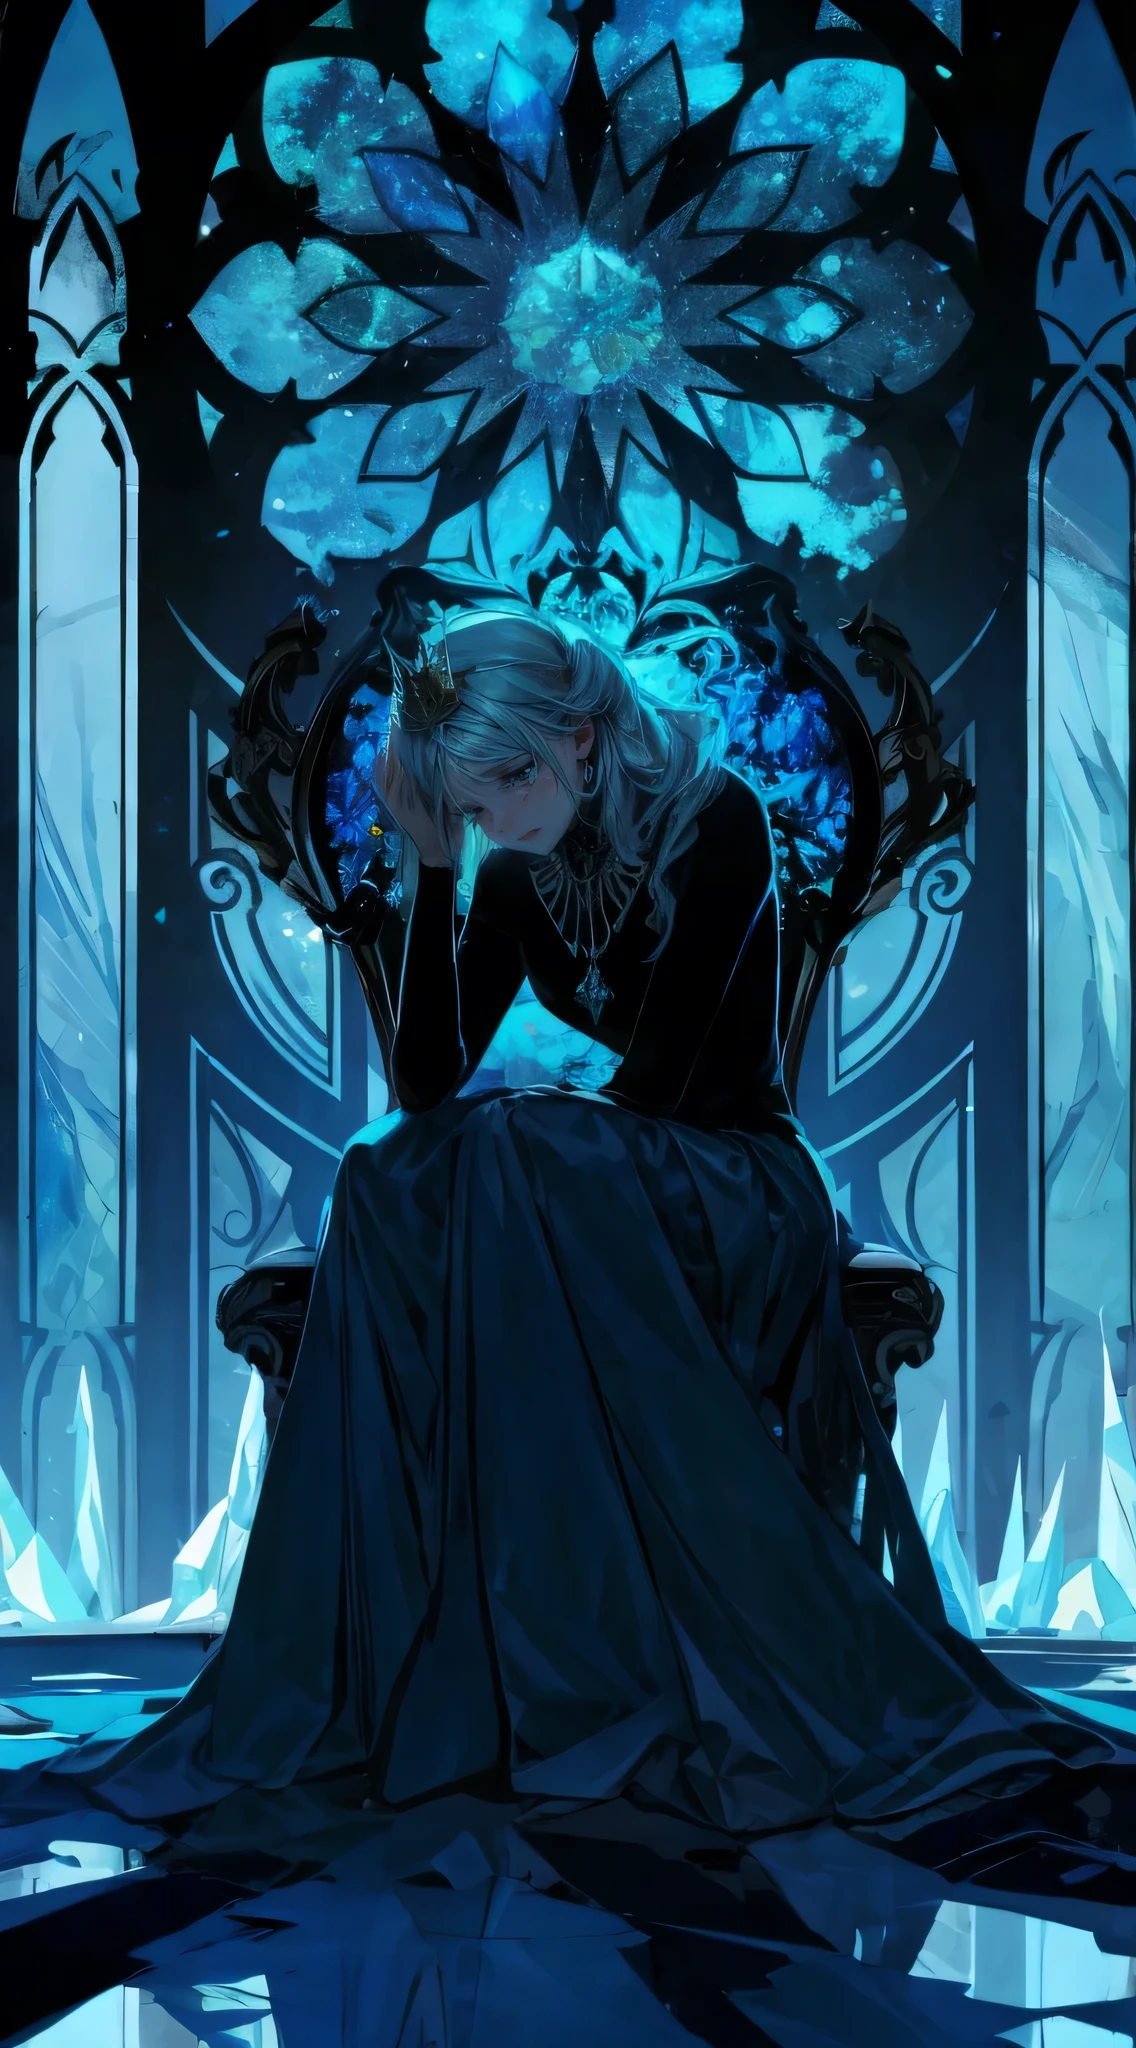 邪惡的冰正坐在她的王座上, 她有一頂小皇冠, 她身後的彩色玻璃裝飾產生丁達爾效應, 強大的, 悲傷, 絕望, 完美的例證, 動漫寫實主義